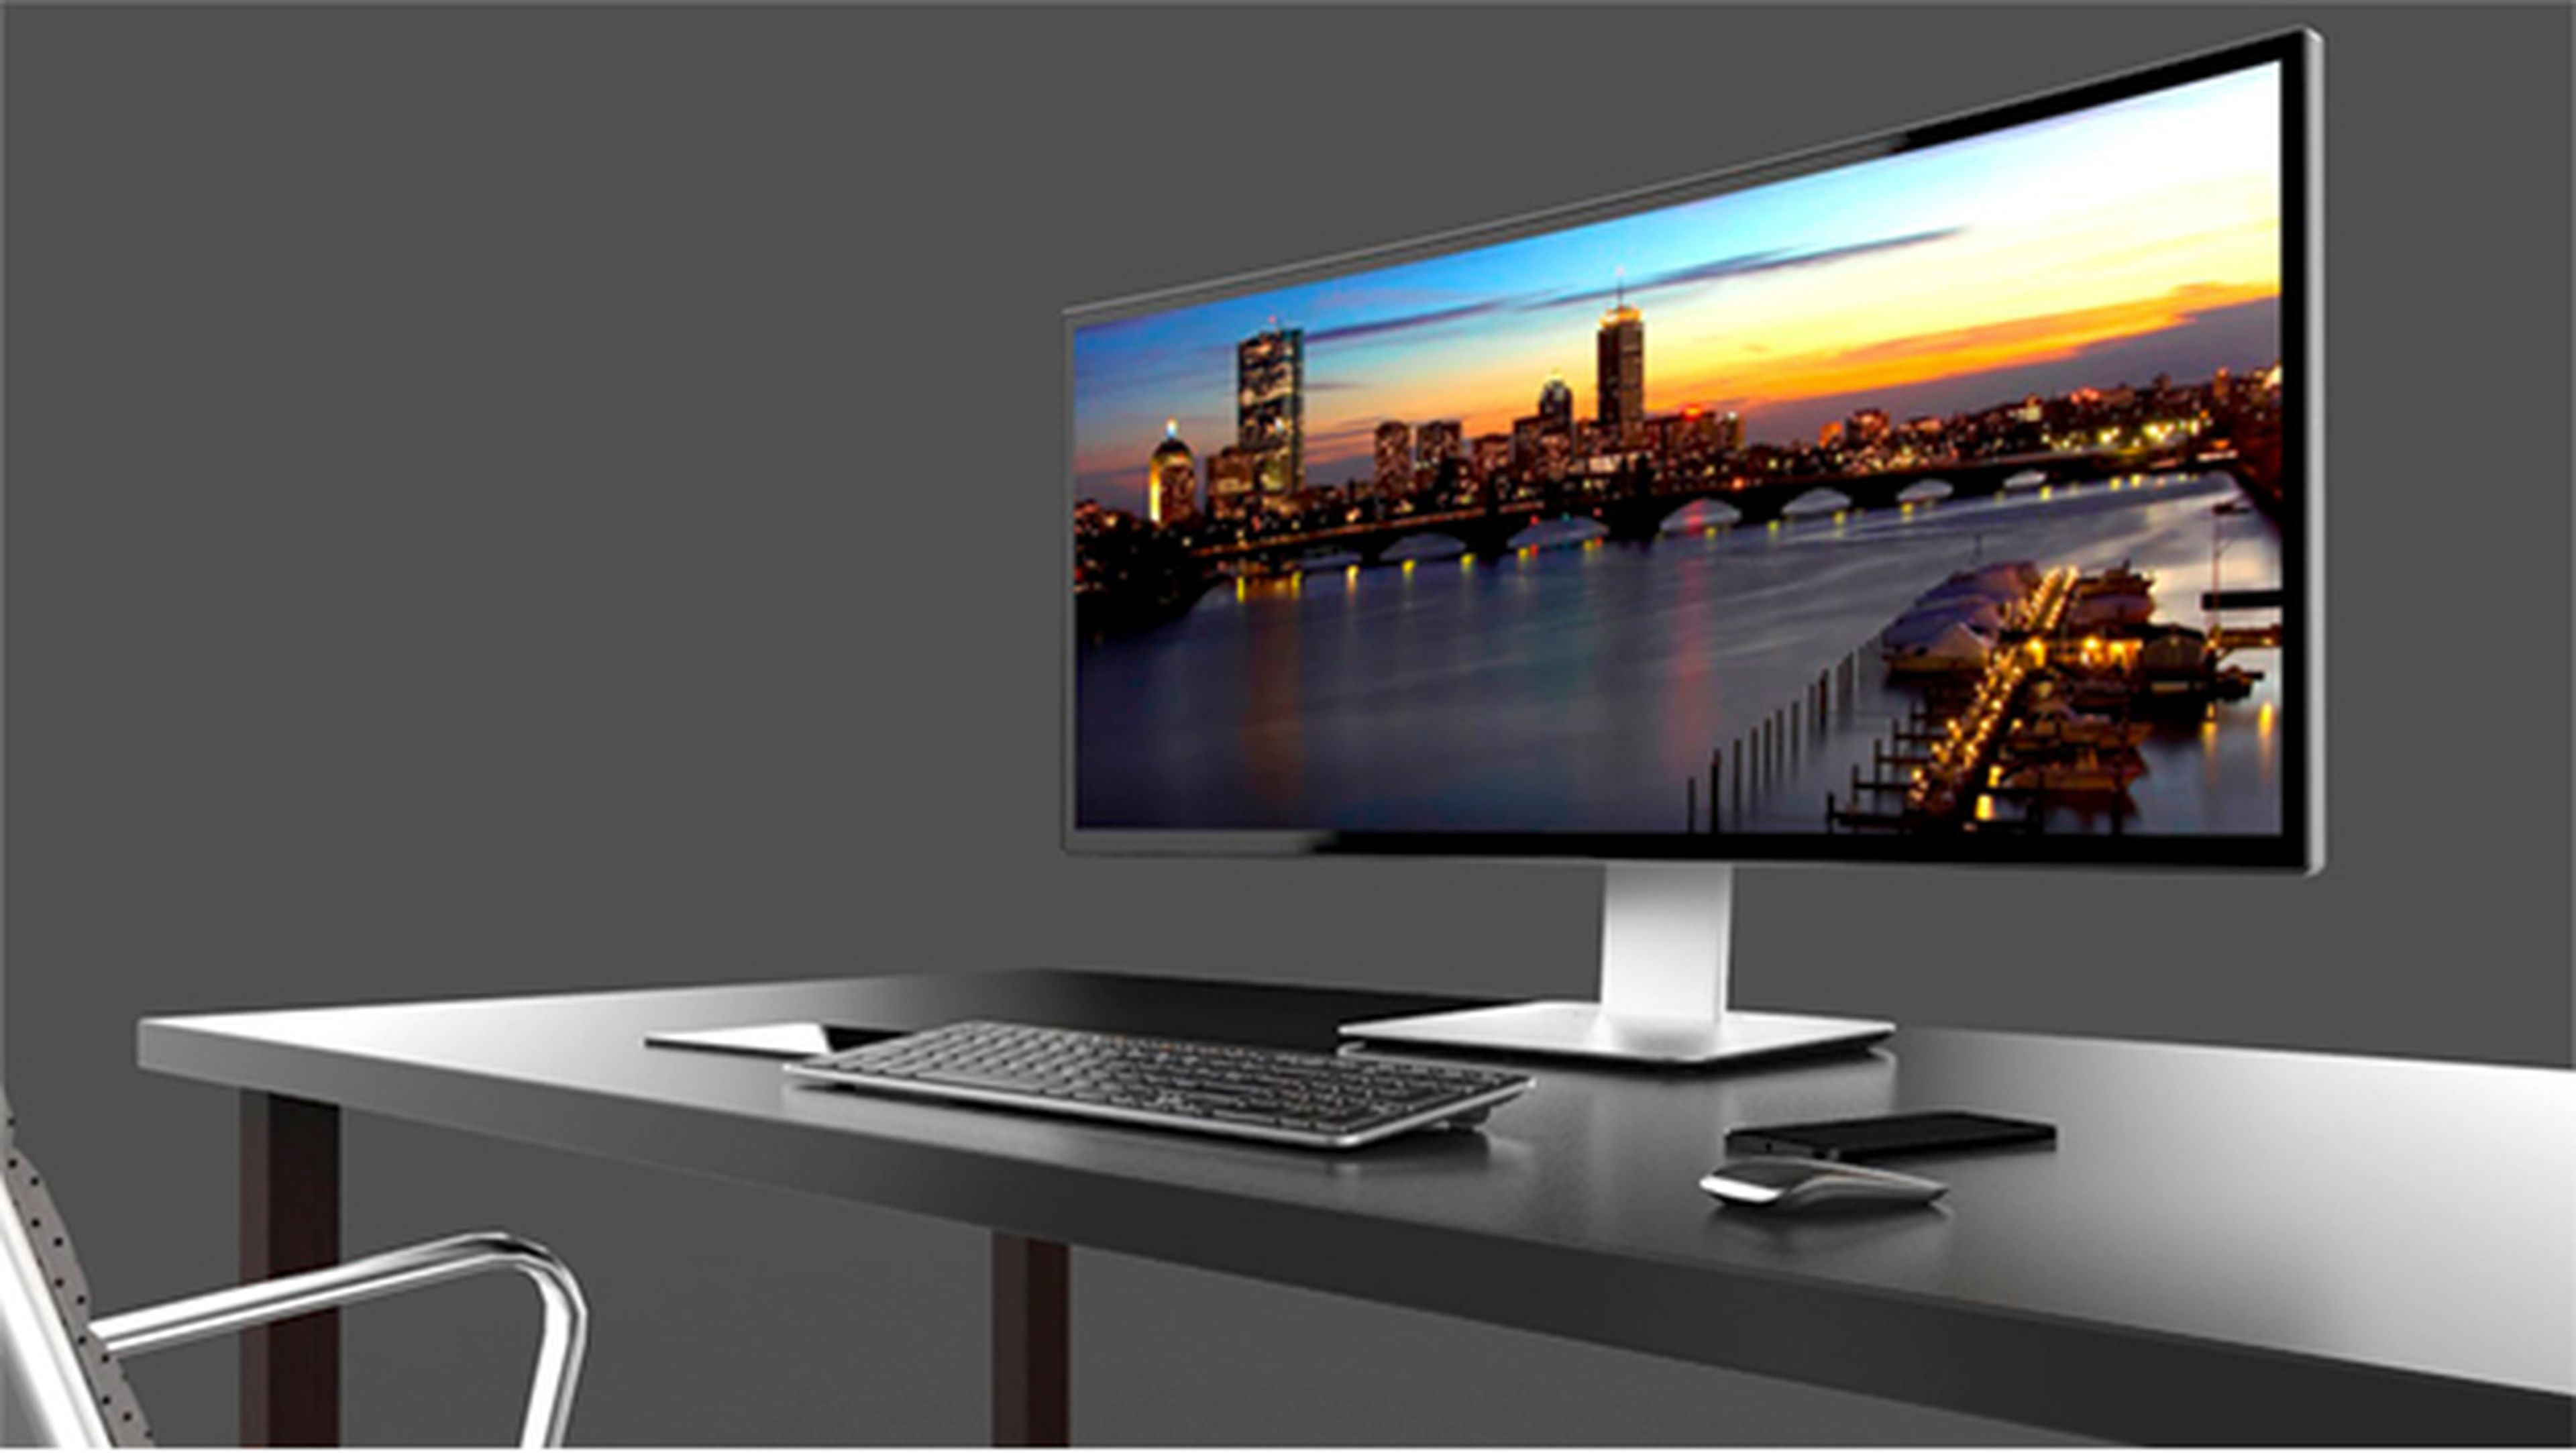 Ahora Automáticamente crítico Los 5 mejores monitores para PC de 2015 | Computer Hoy